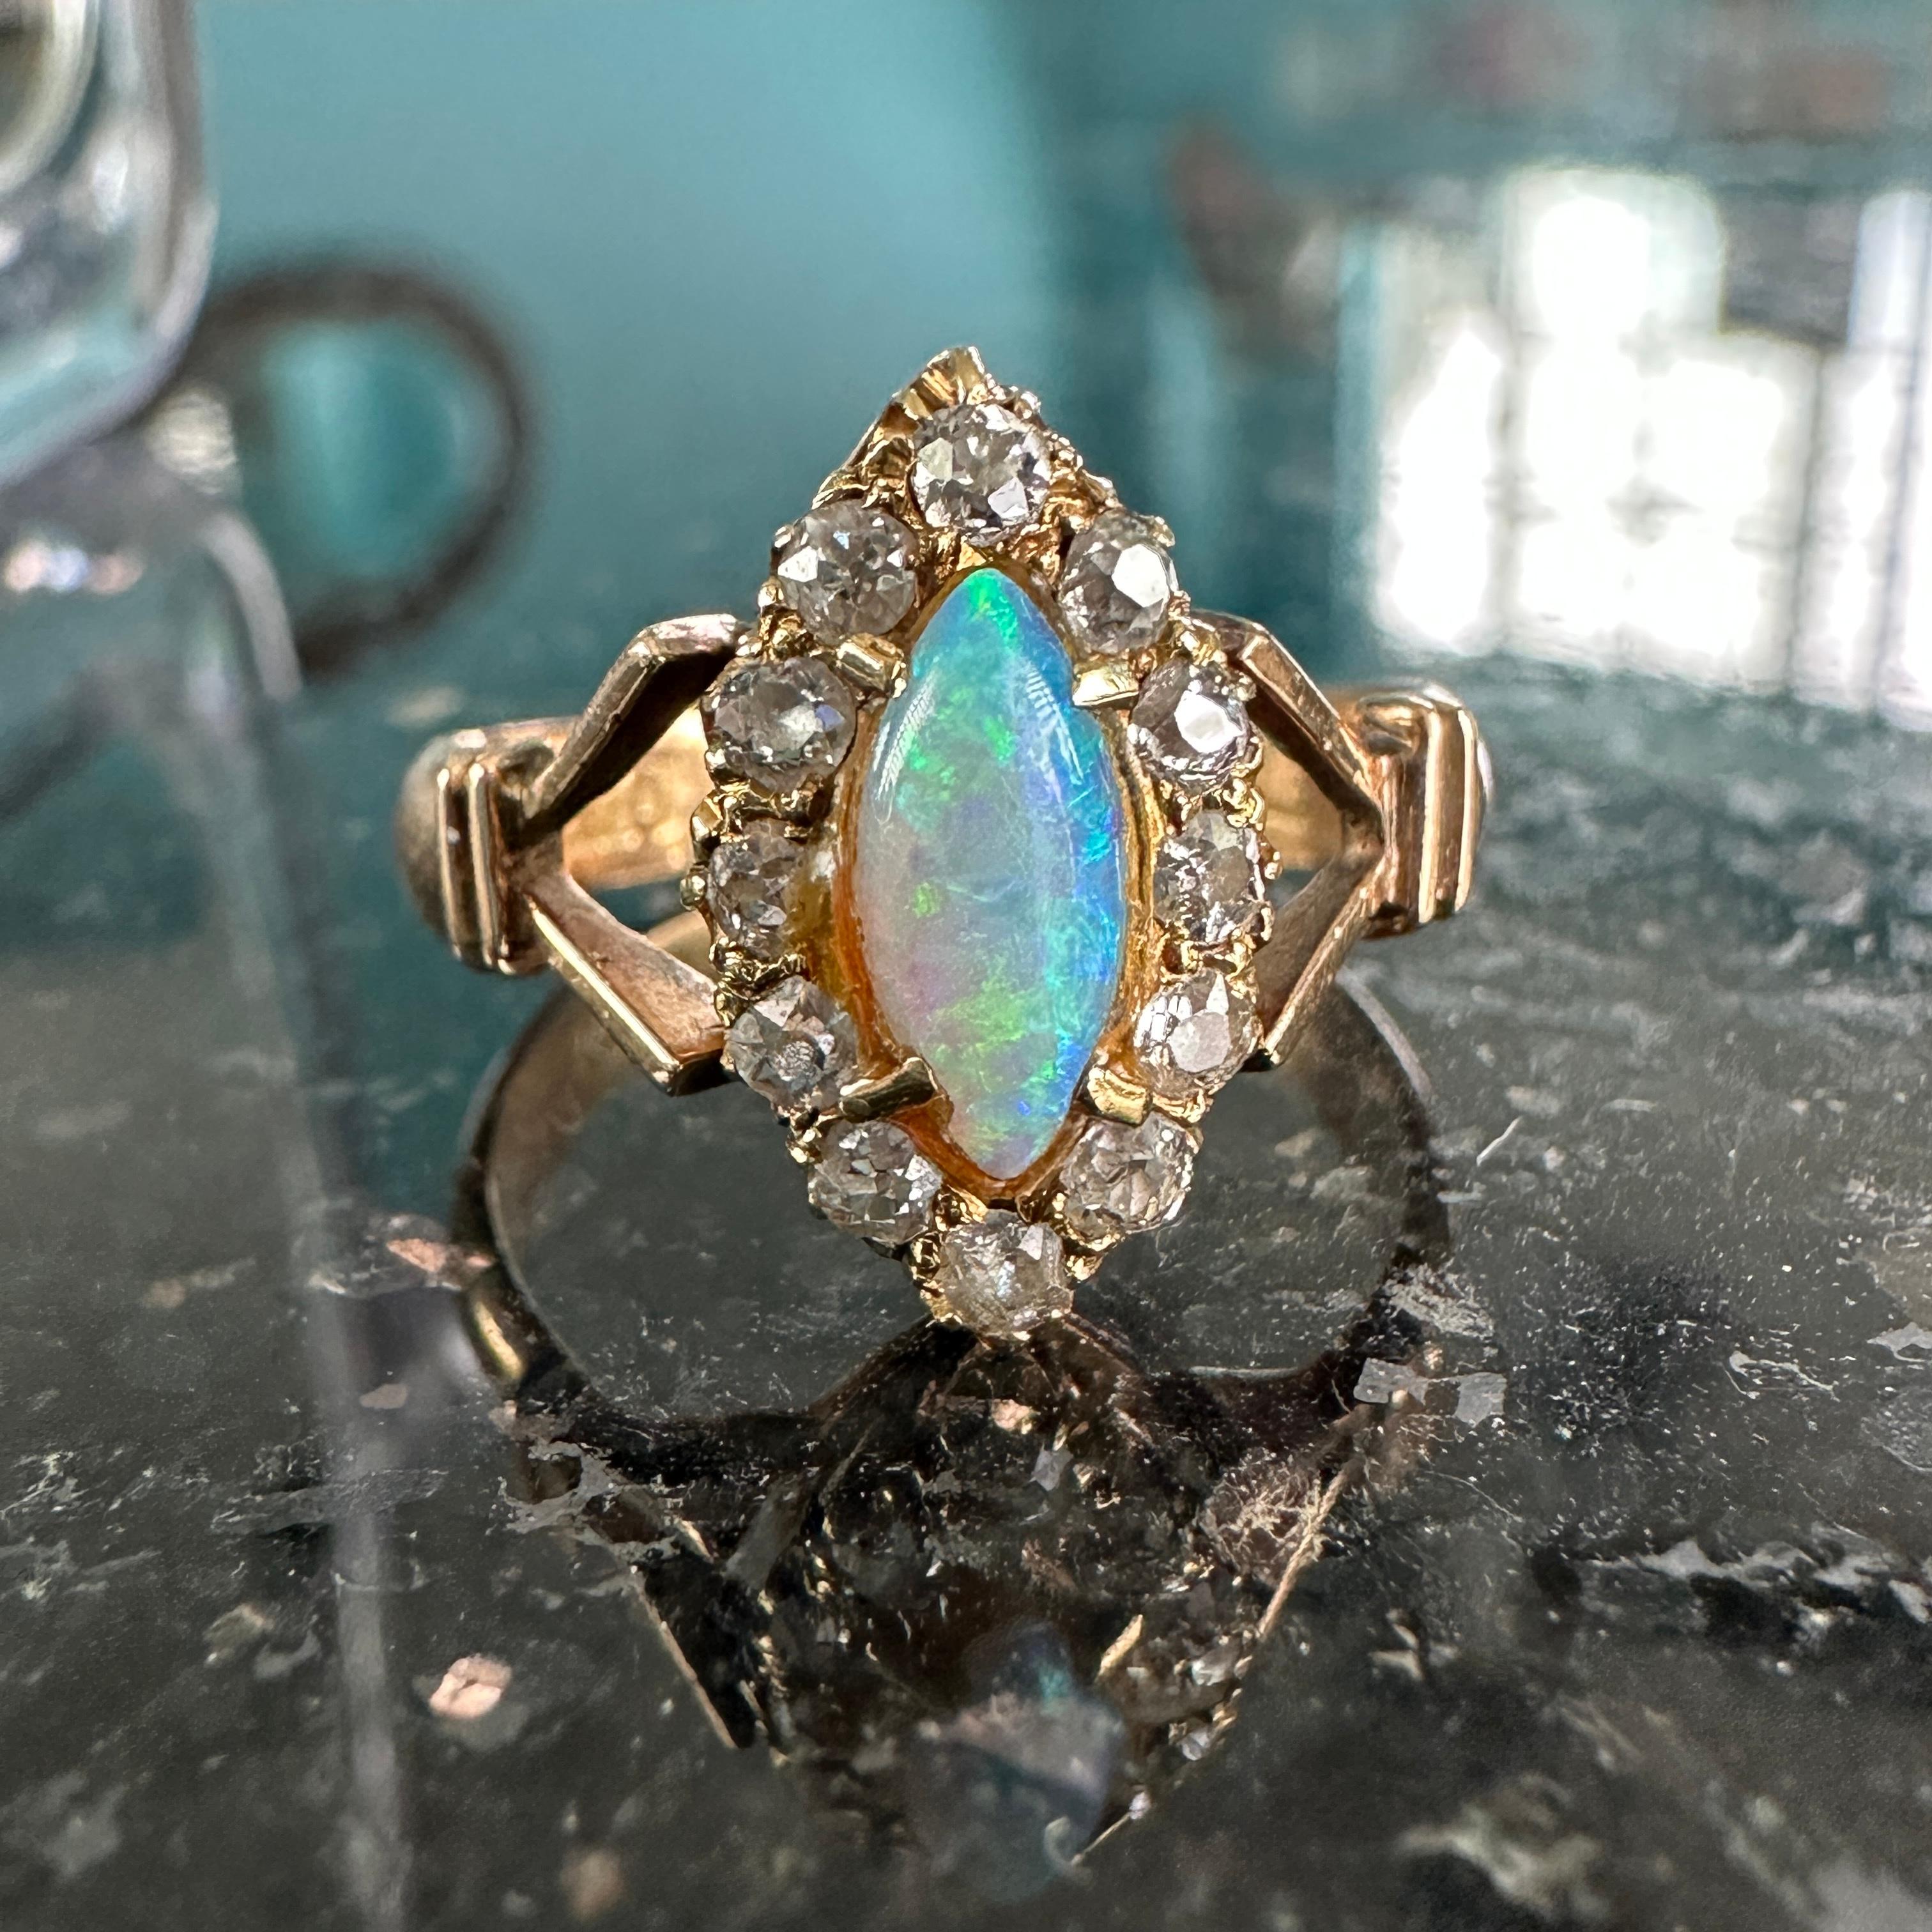 Einzelheiten:
Fabelhafter viktorianischer Navette-Opal- und Diamantring in 18 K subtilem Roségold. Das Band hat fantastische Details, und die Diamanten sind schöne Rosenschliffe. Der Vollspektrum-Opal misst 8,8 mm x 4 mm und hat tiefe Blau-, Grün-,